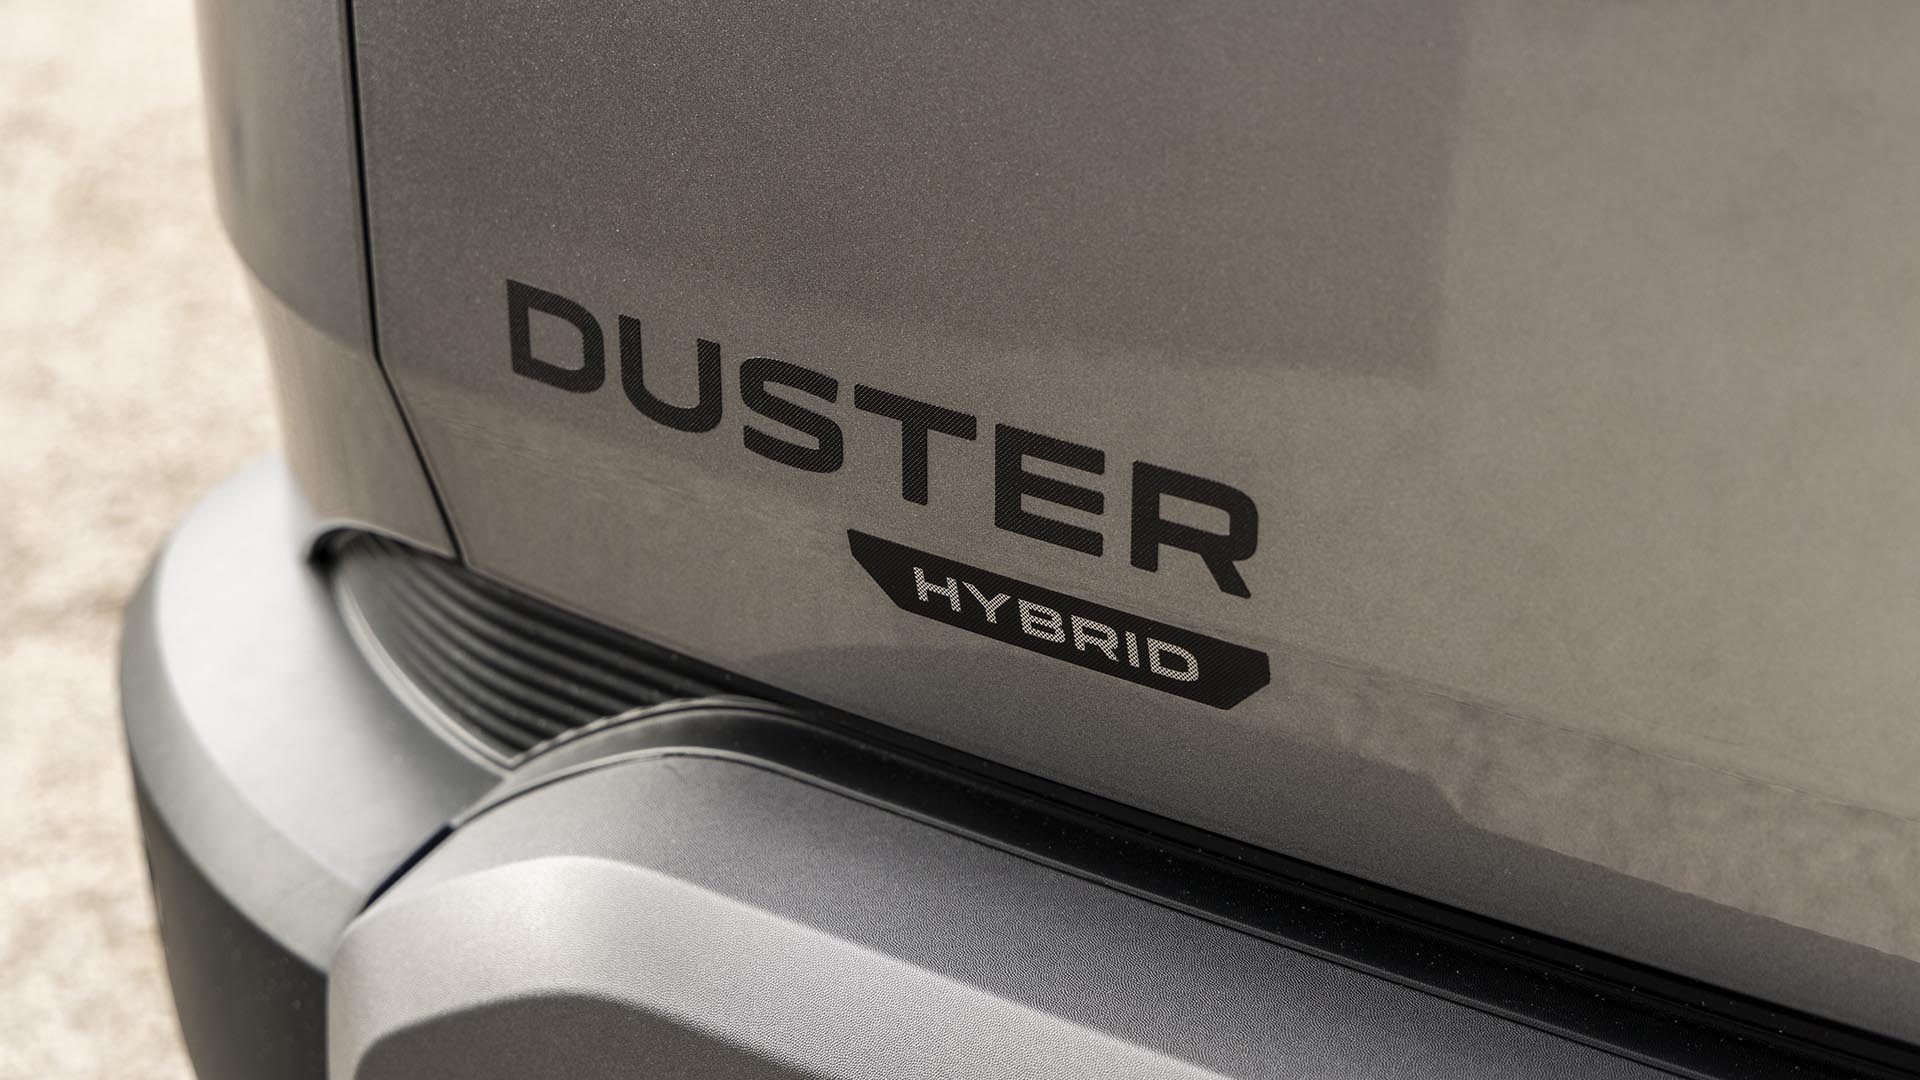 New Dacia Duster — Auto Trader New Car Deals